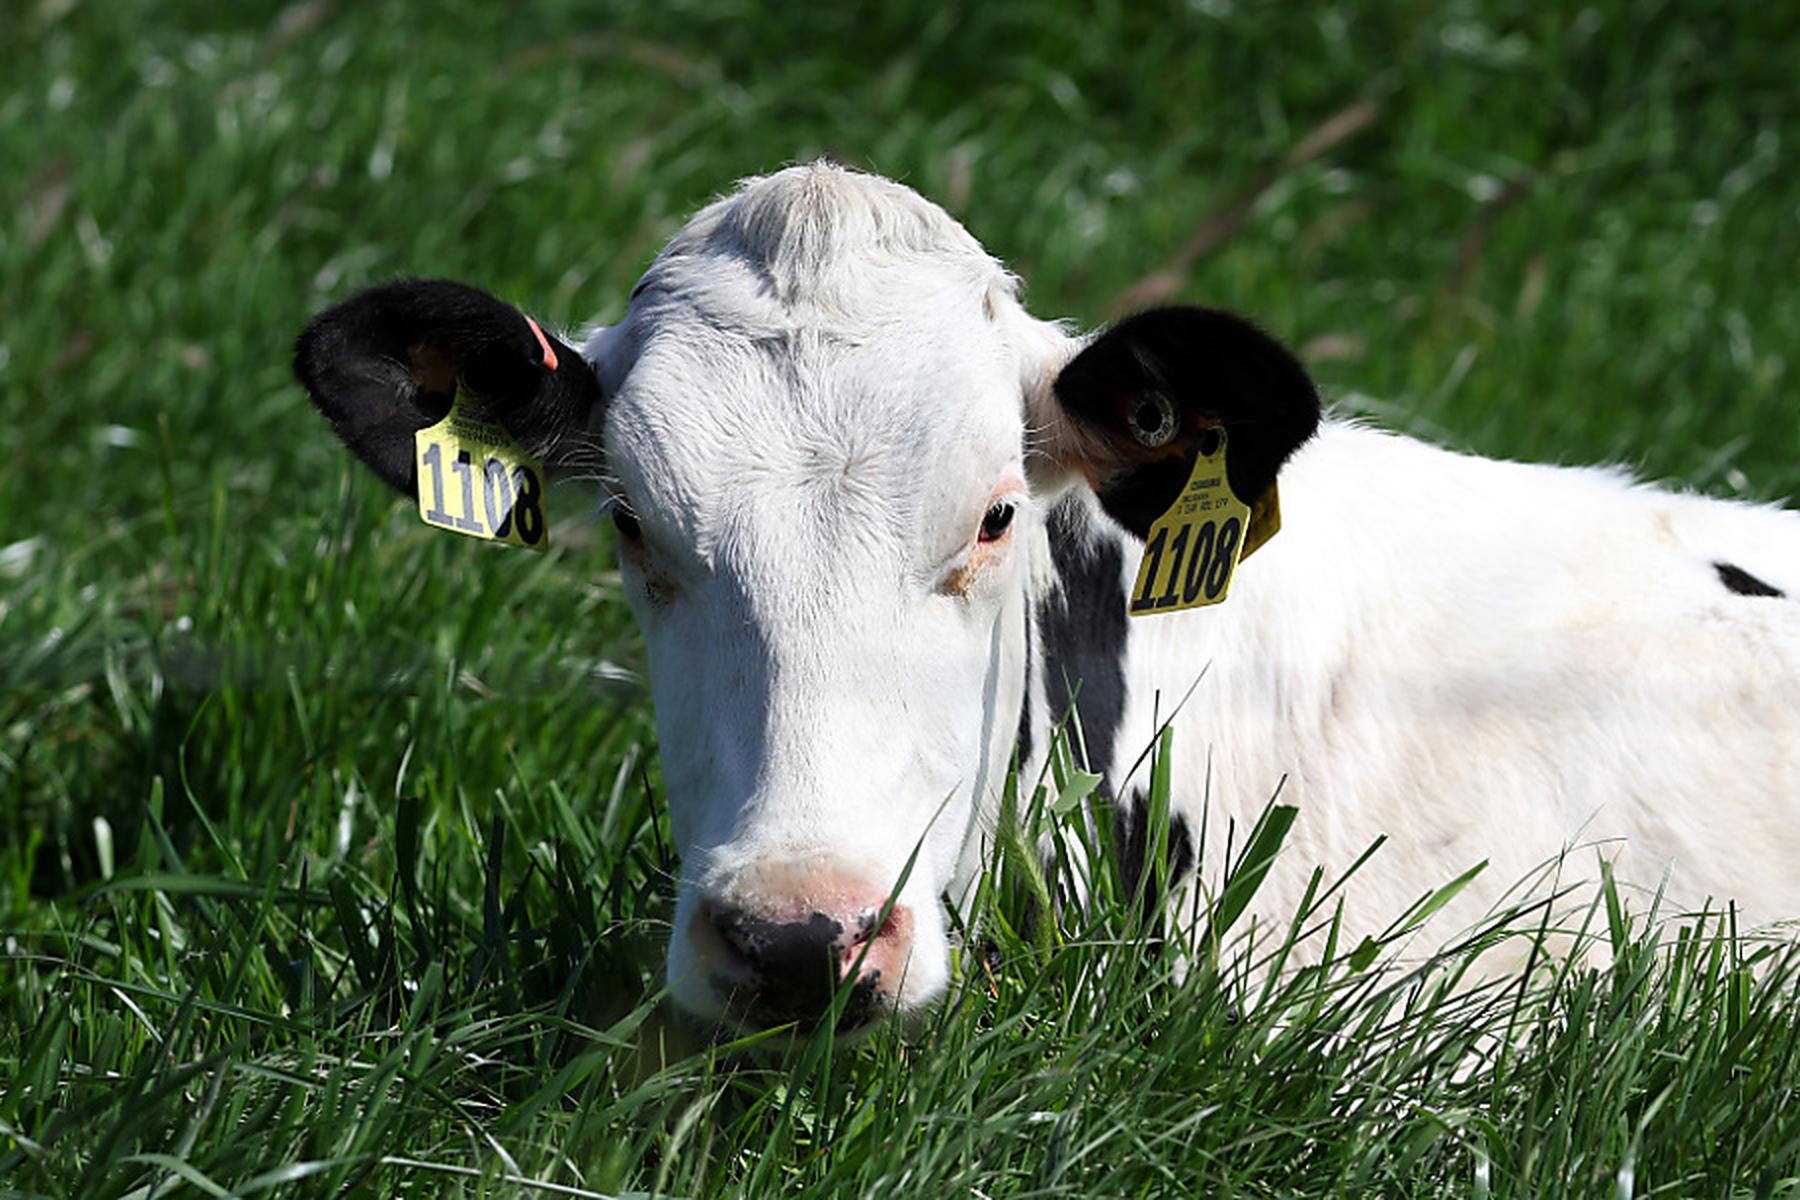 Washington: Weiterer Fall von Vogelgrippe in USA nach Kontakt mit Kühen